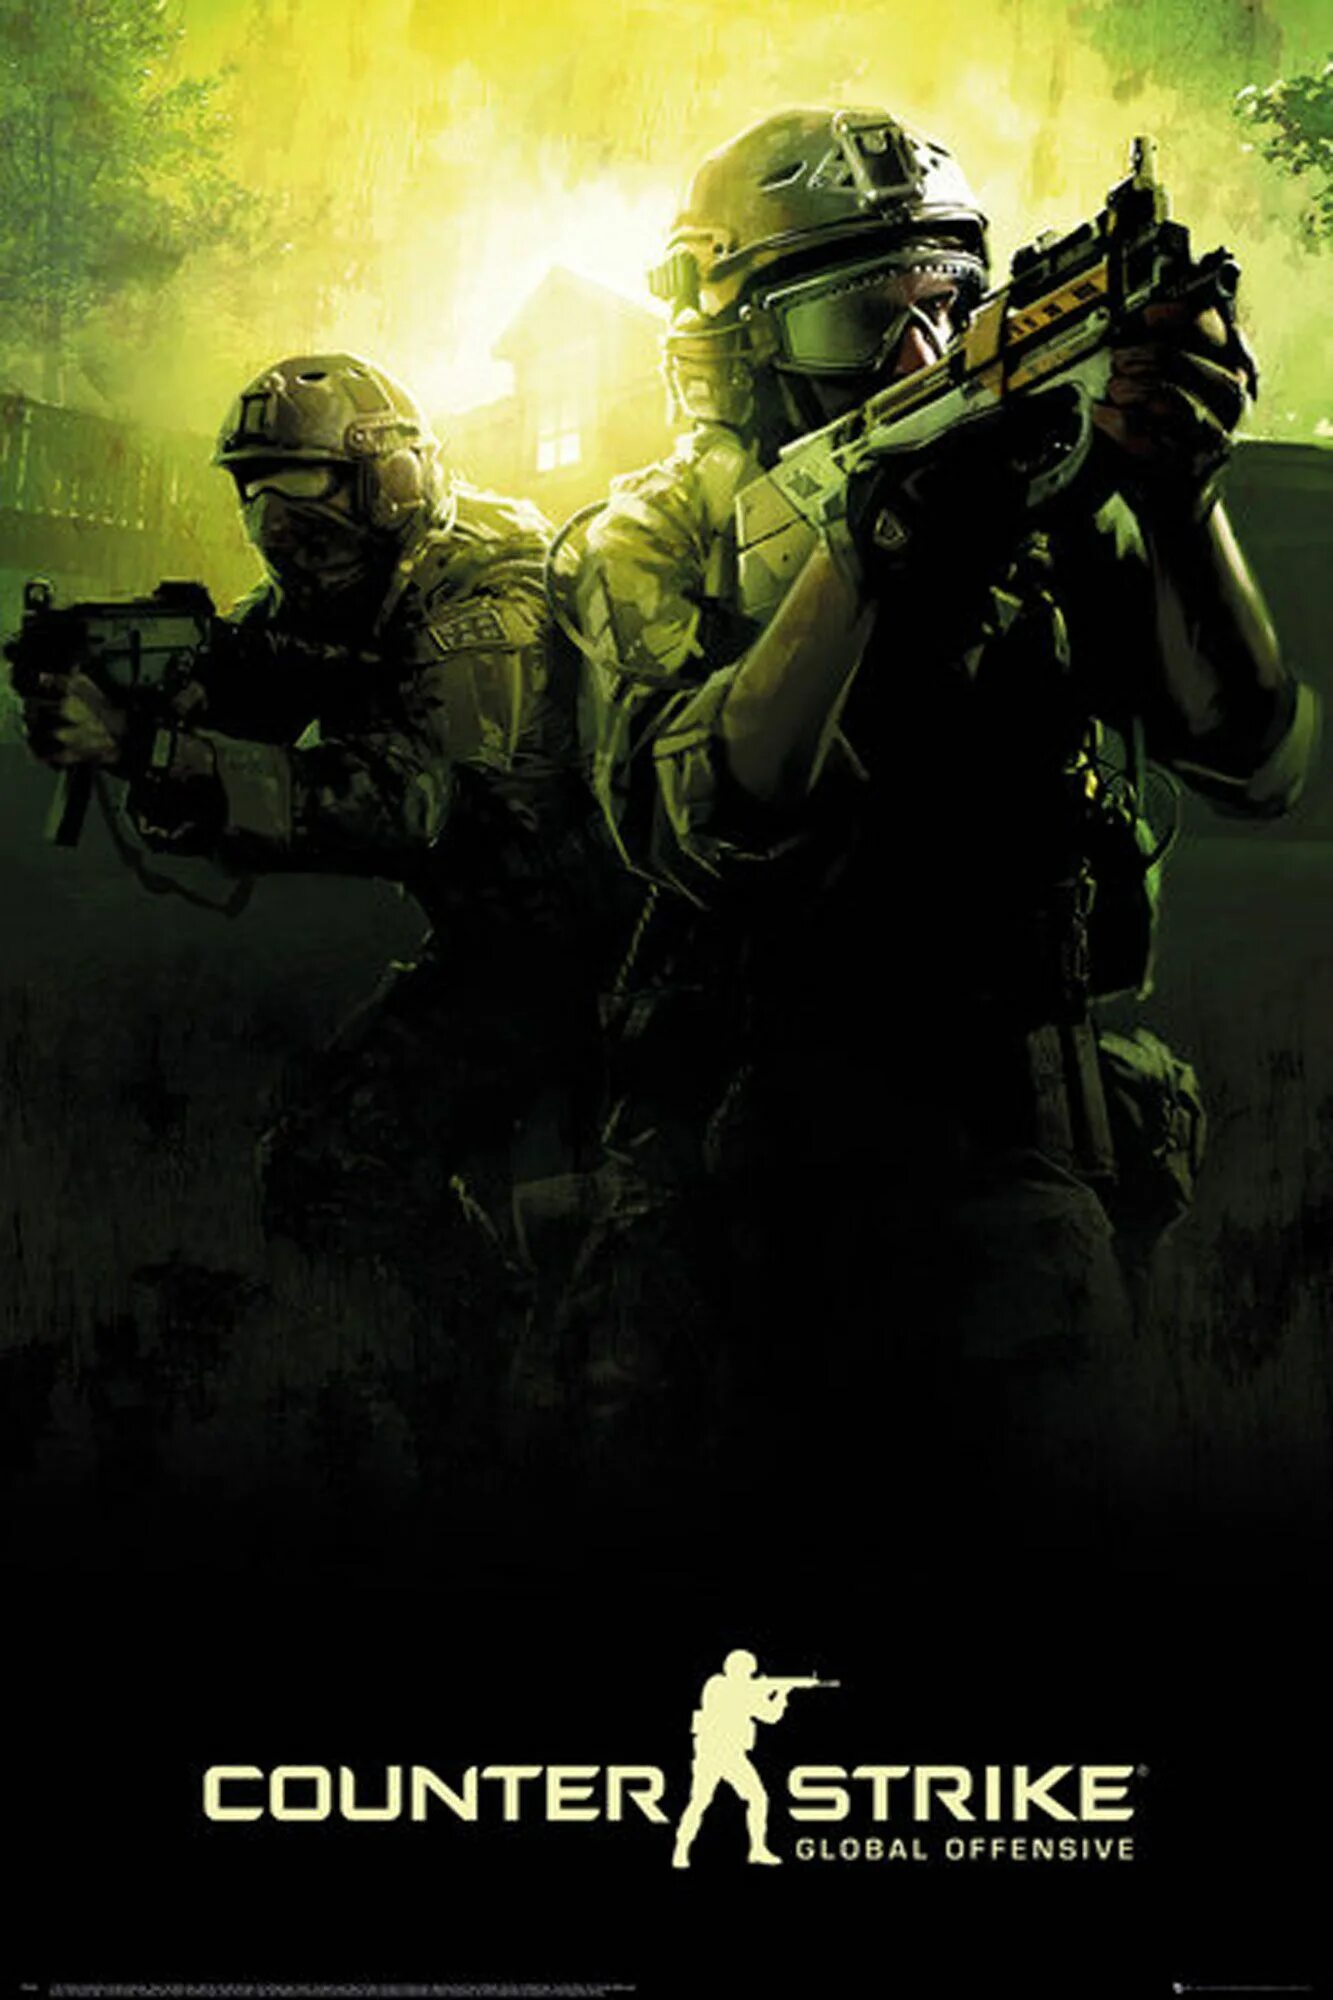 Counter Strike Постер. Counter-Strike: Global Offensive. КС обложка. КС го. Обложка кс